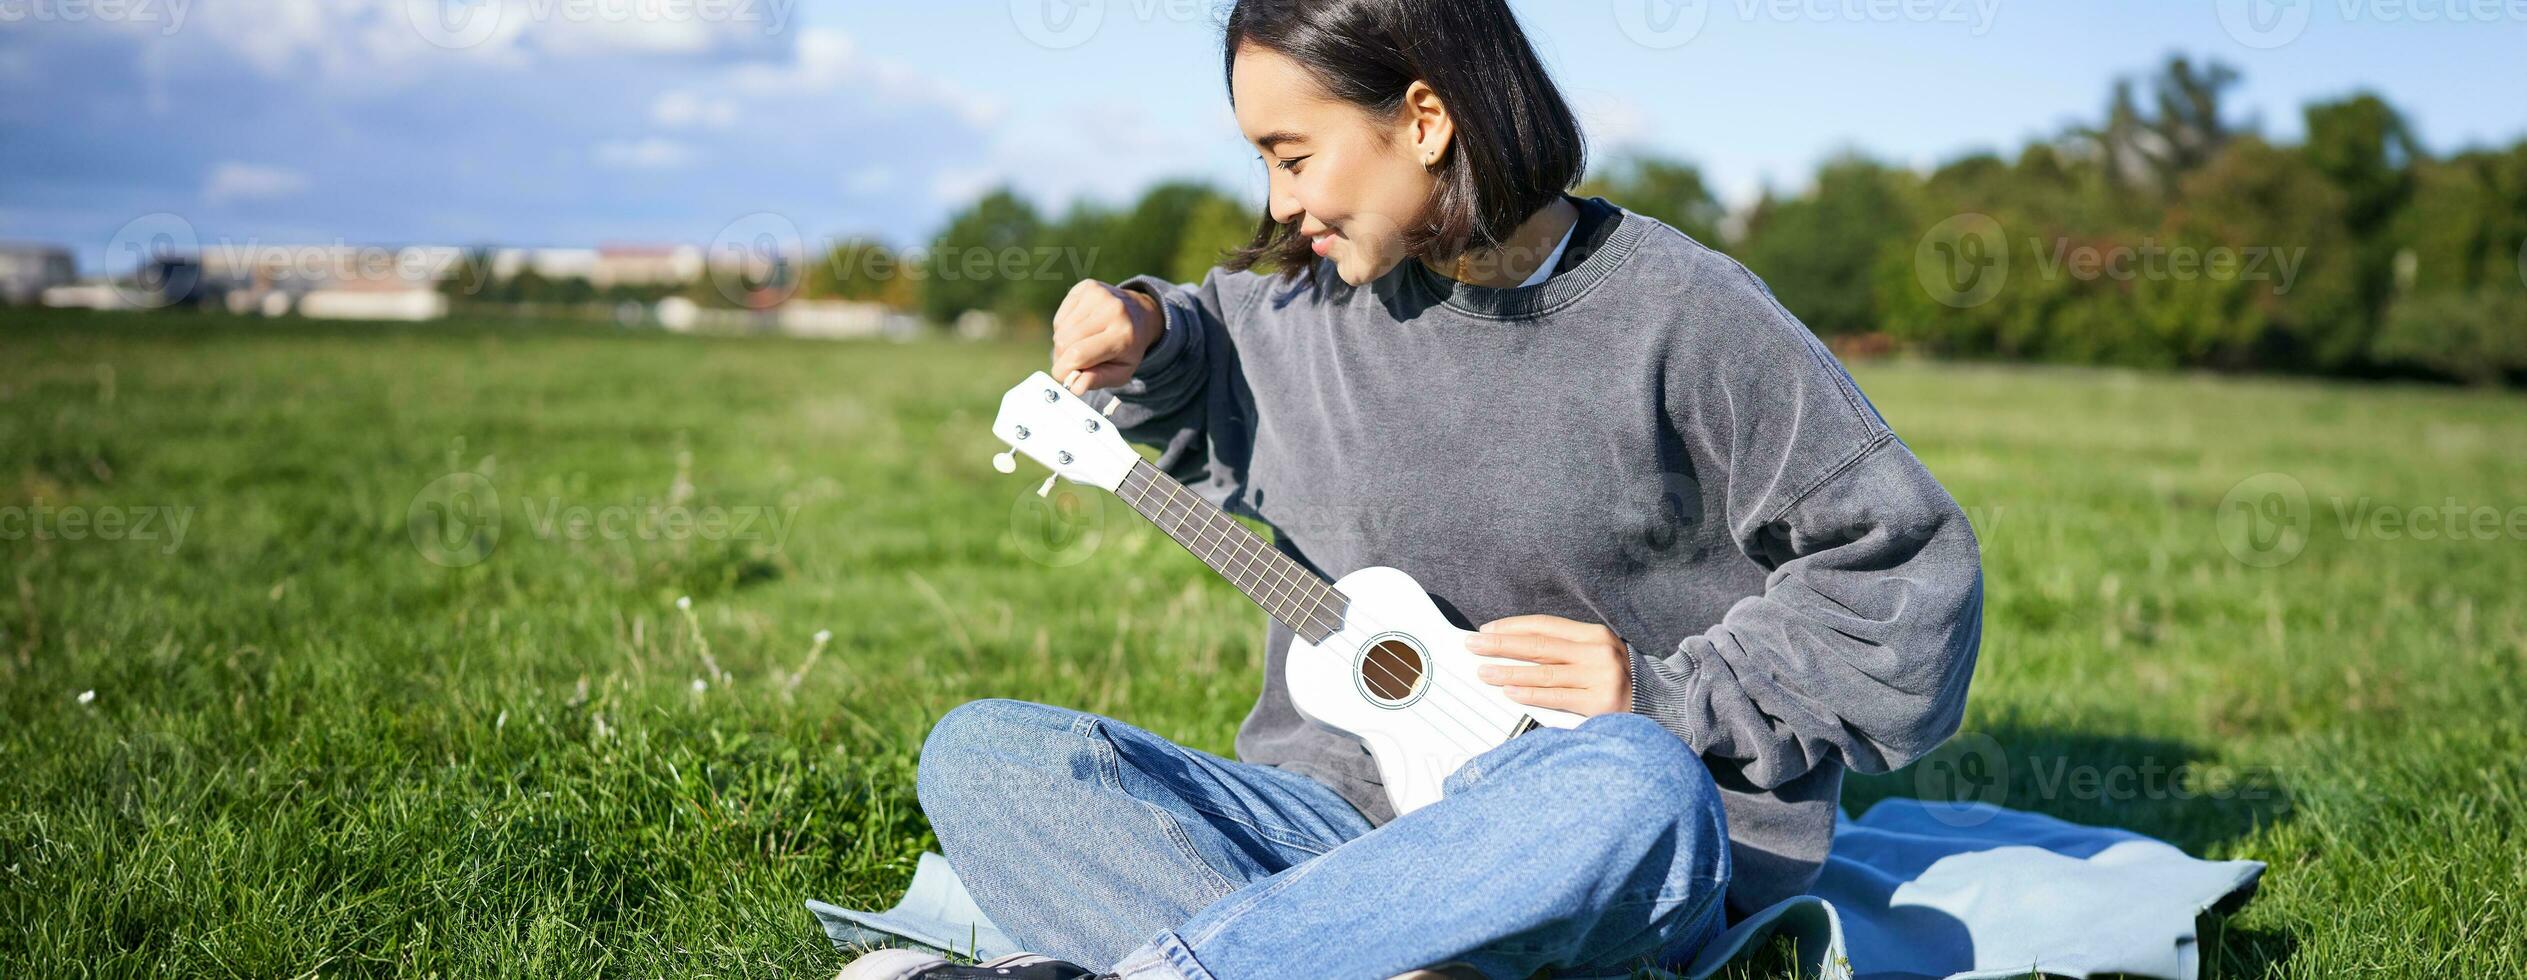 canto asiático niña jugando ukelele en césped, sentado en cobija en parque, relajante al aire libre en soleado día foto